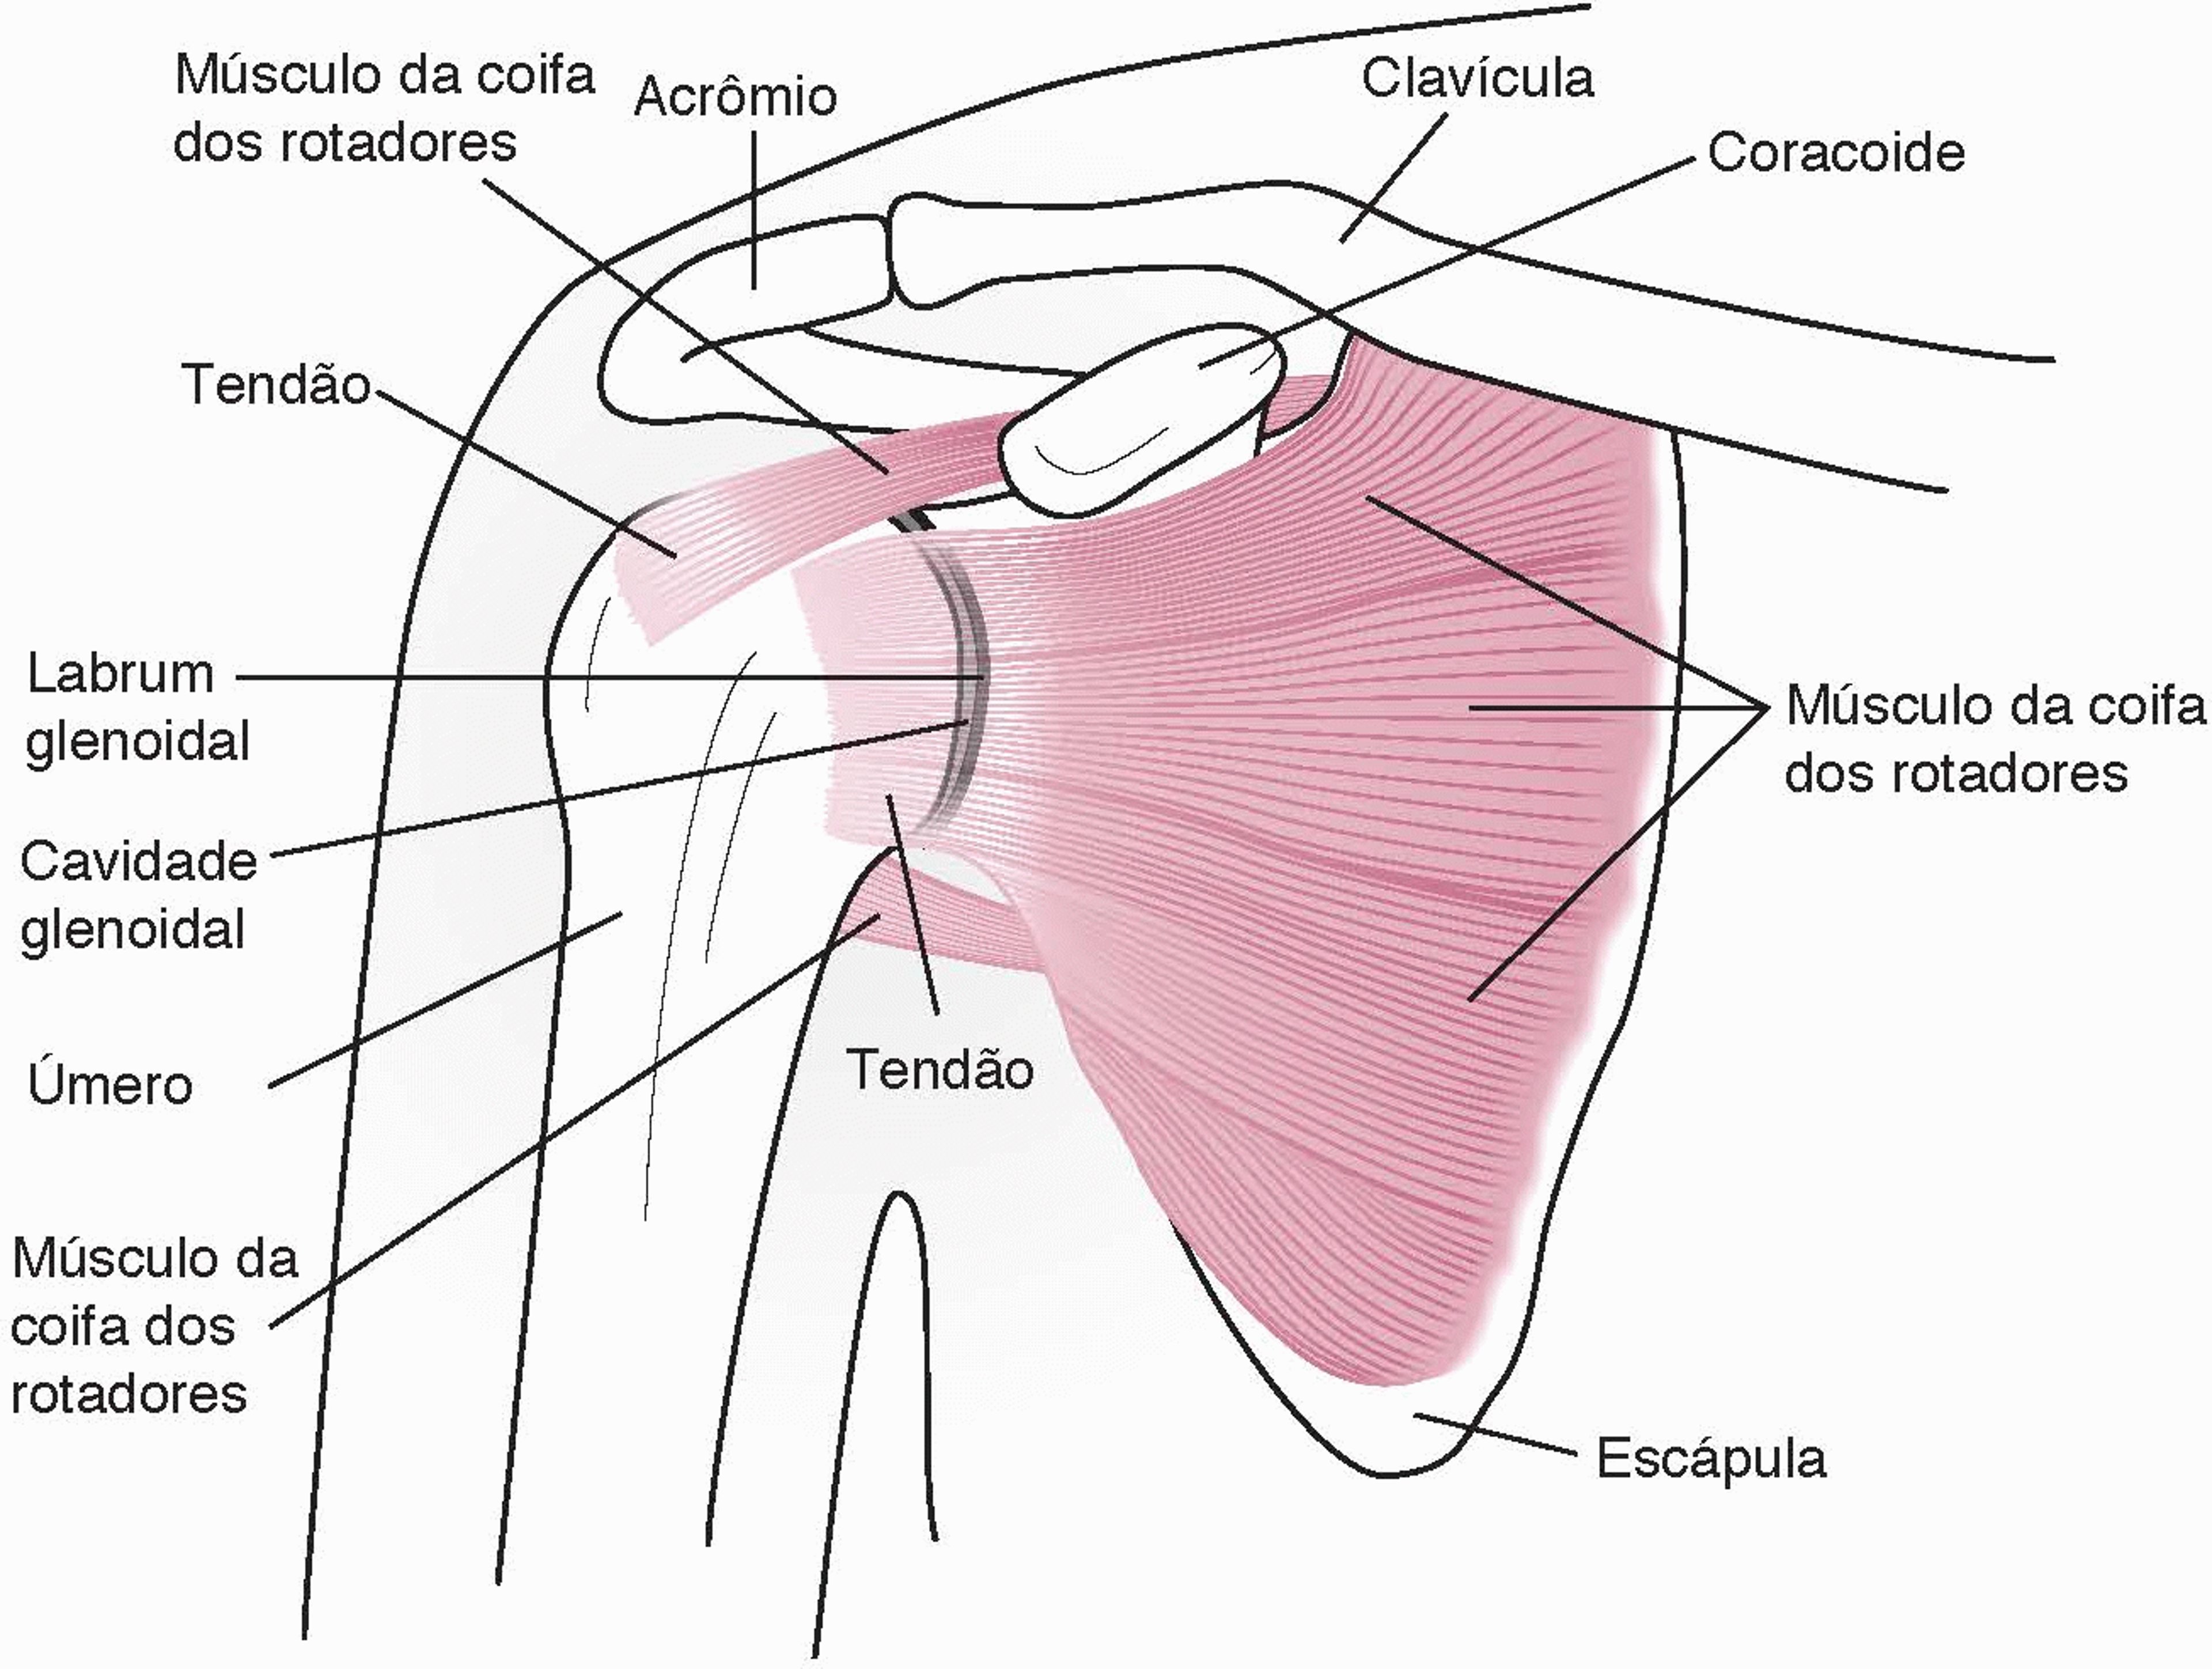 Anatomia de uma articulação do ombro